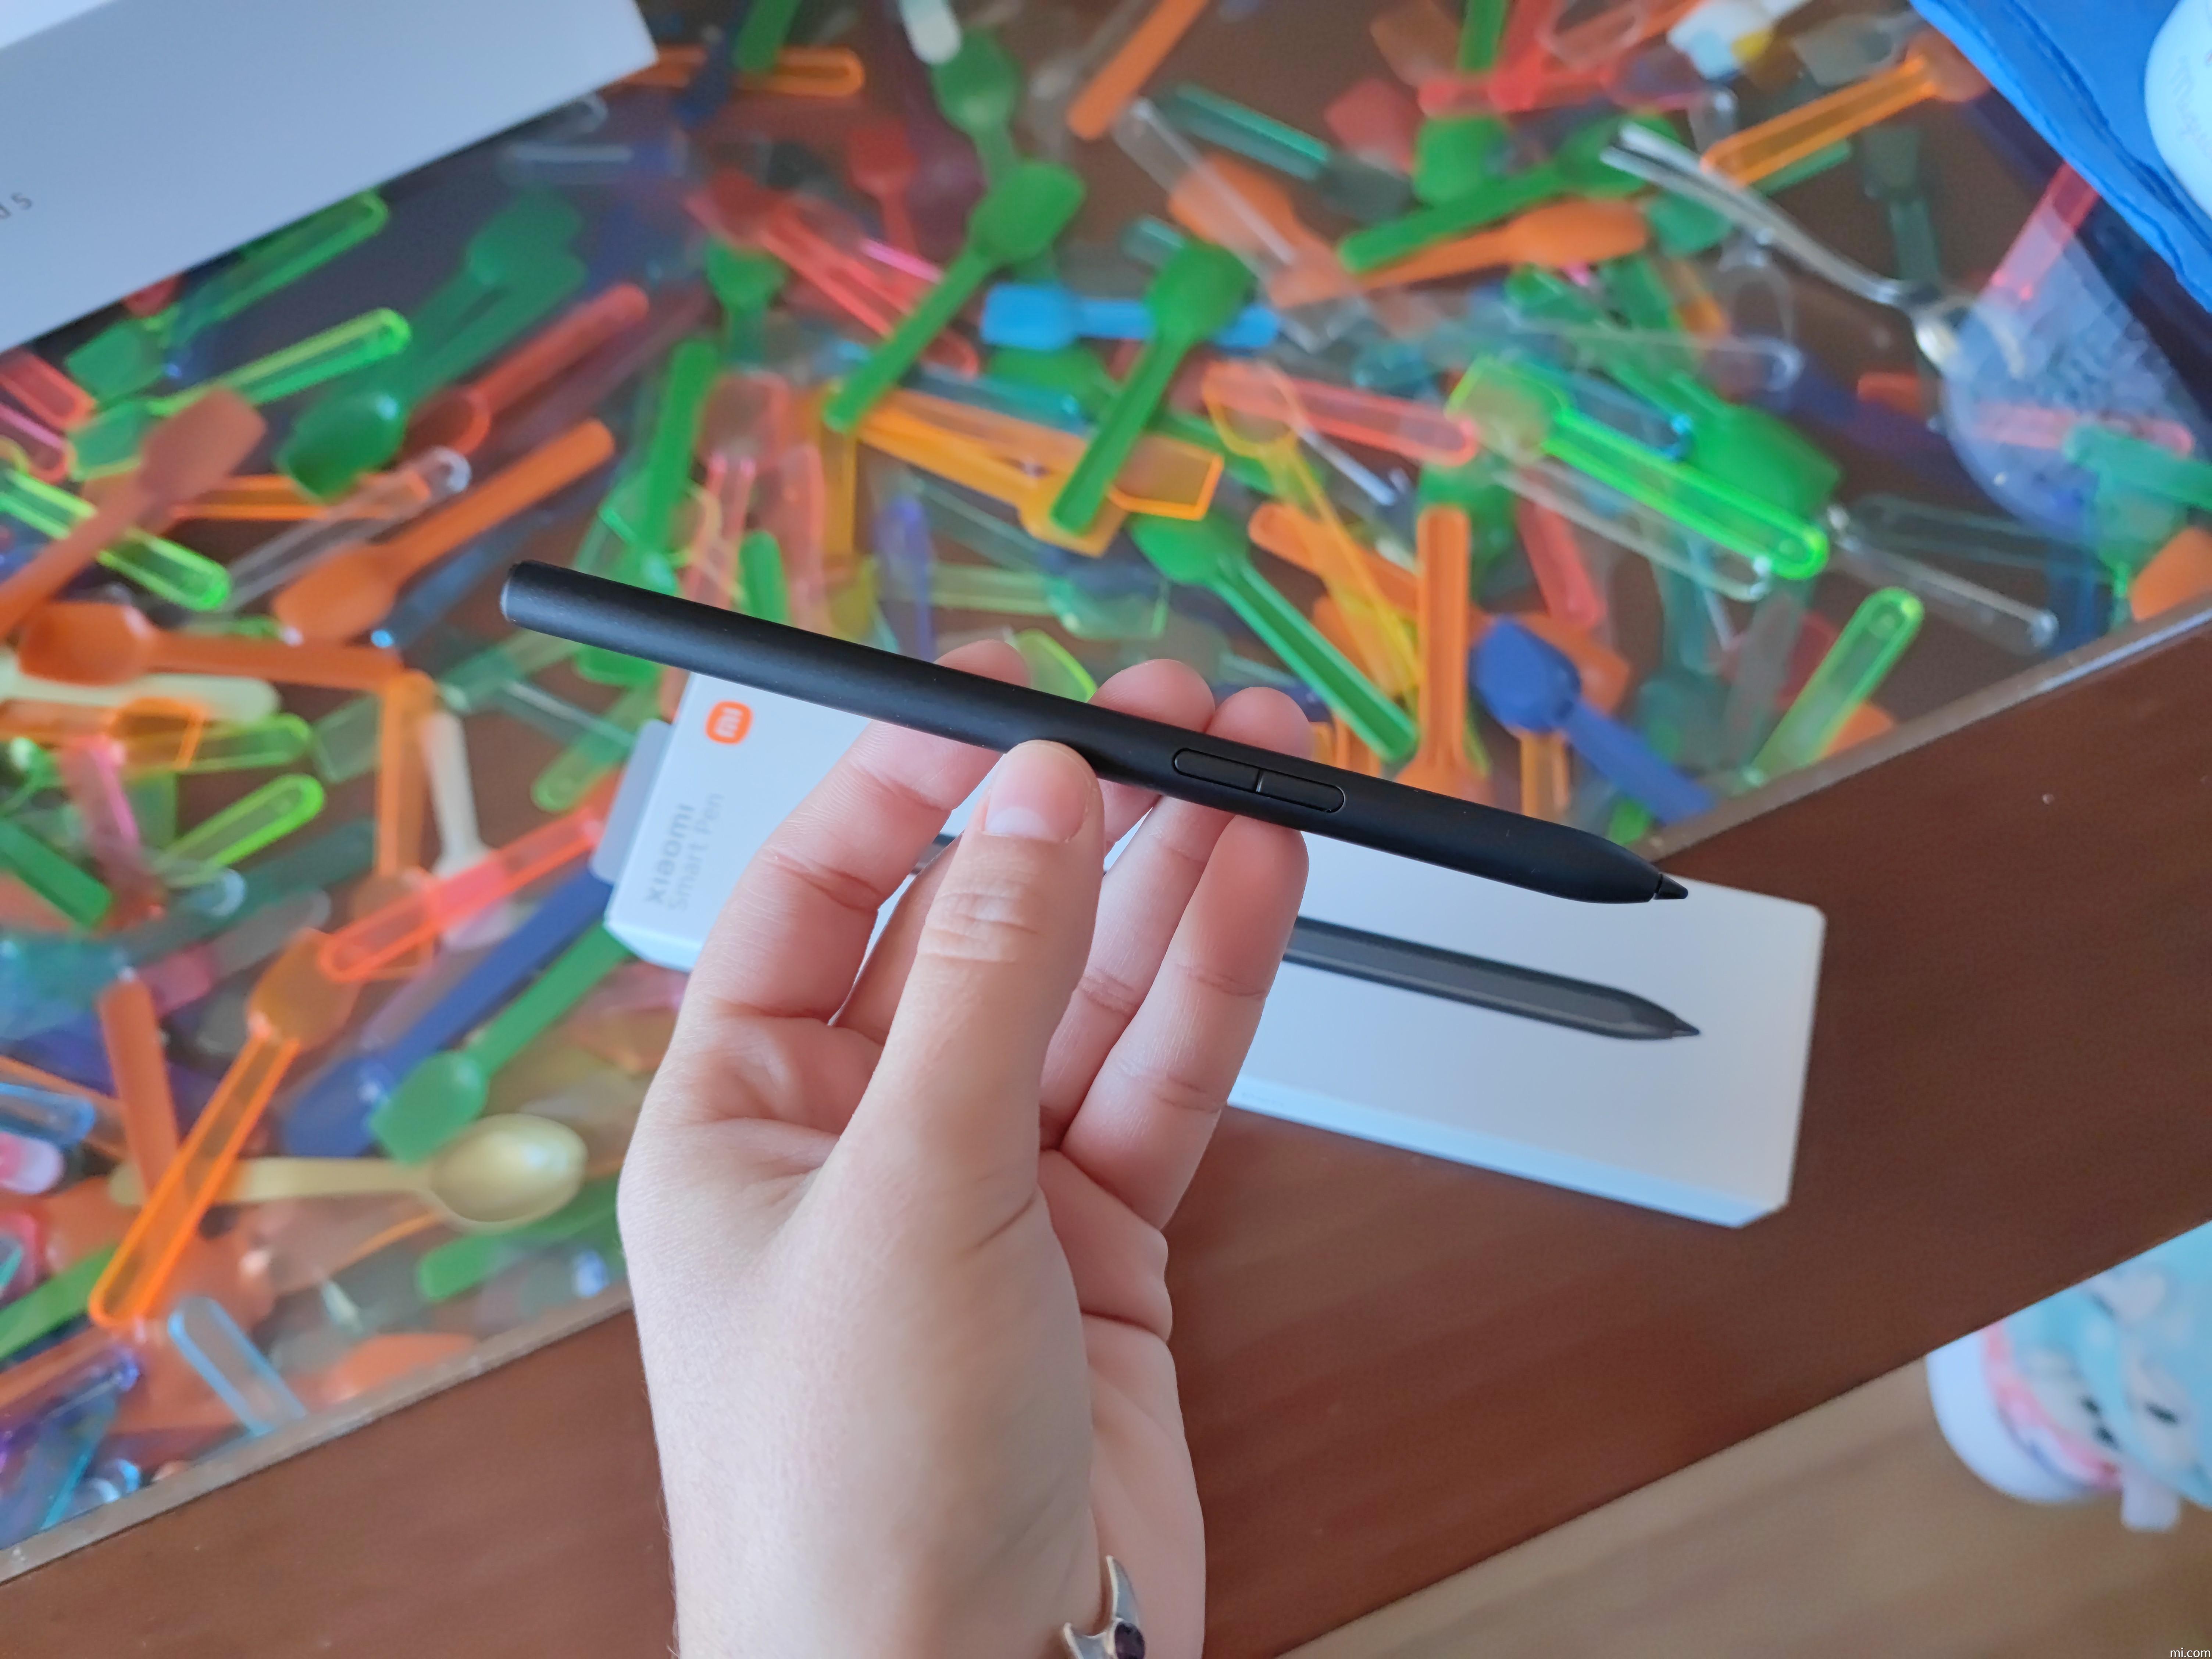 Comprar el Stylus / Pen para la Xiaomi Pad 5 (OFICIAL y ECONÓMICO)